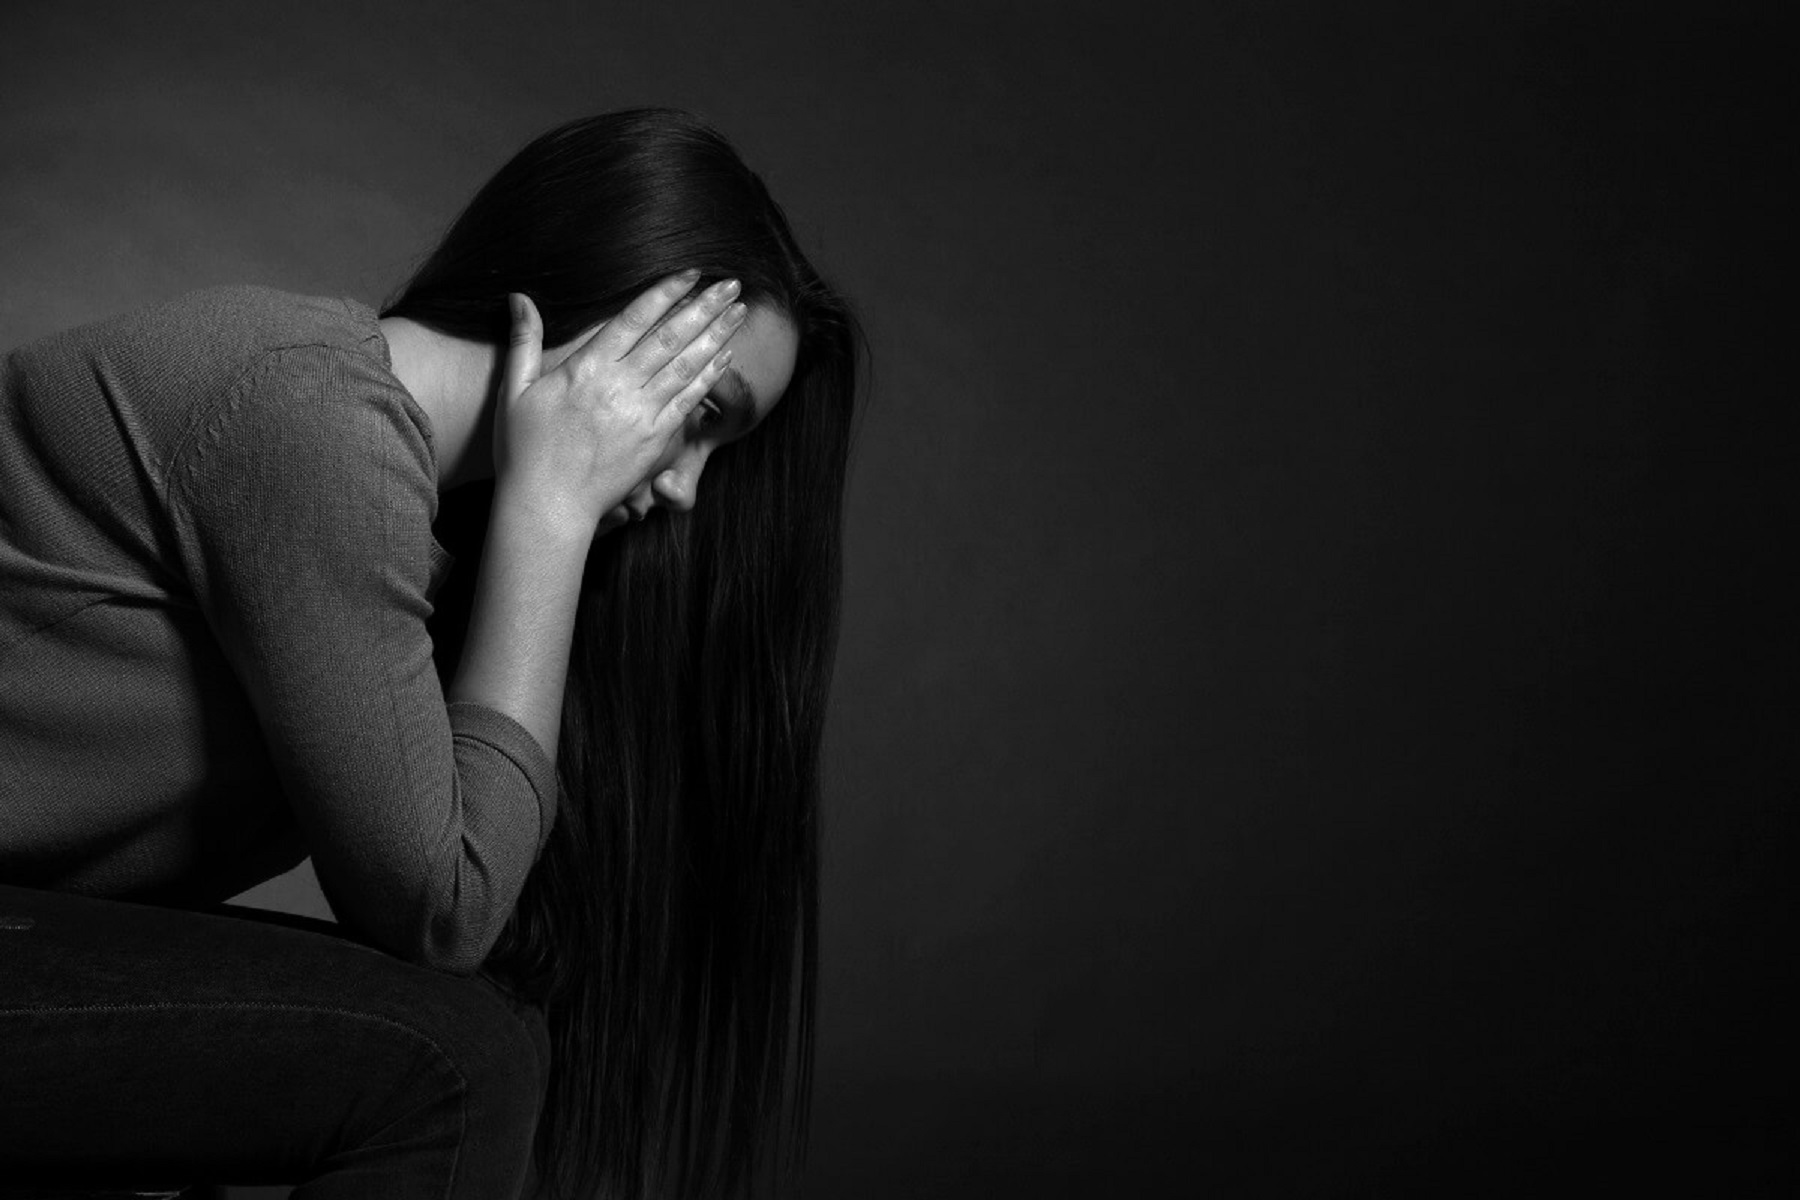 Νέα Μελέτη: Οι νέοι ενήλικες με σχιζοφρένεια αντιμετωπίζουν τον υψηλότερο κίνδυνο αυτοκτονίας